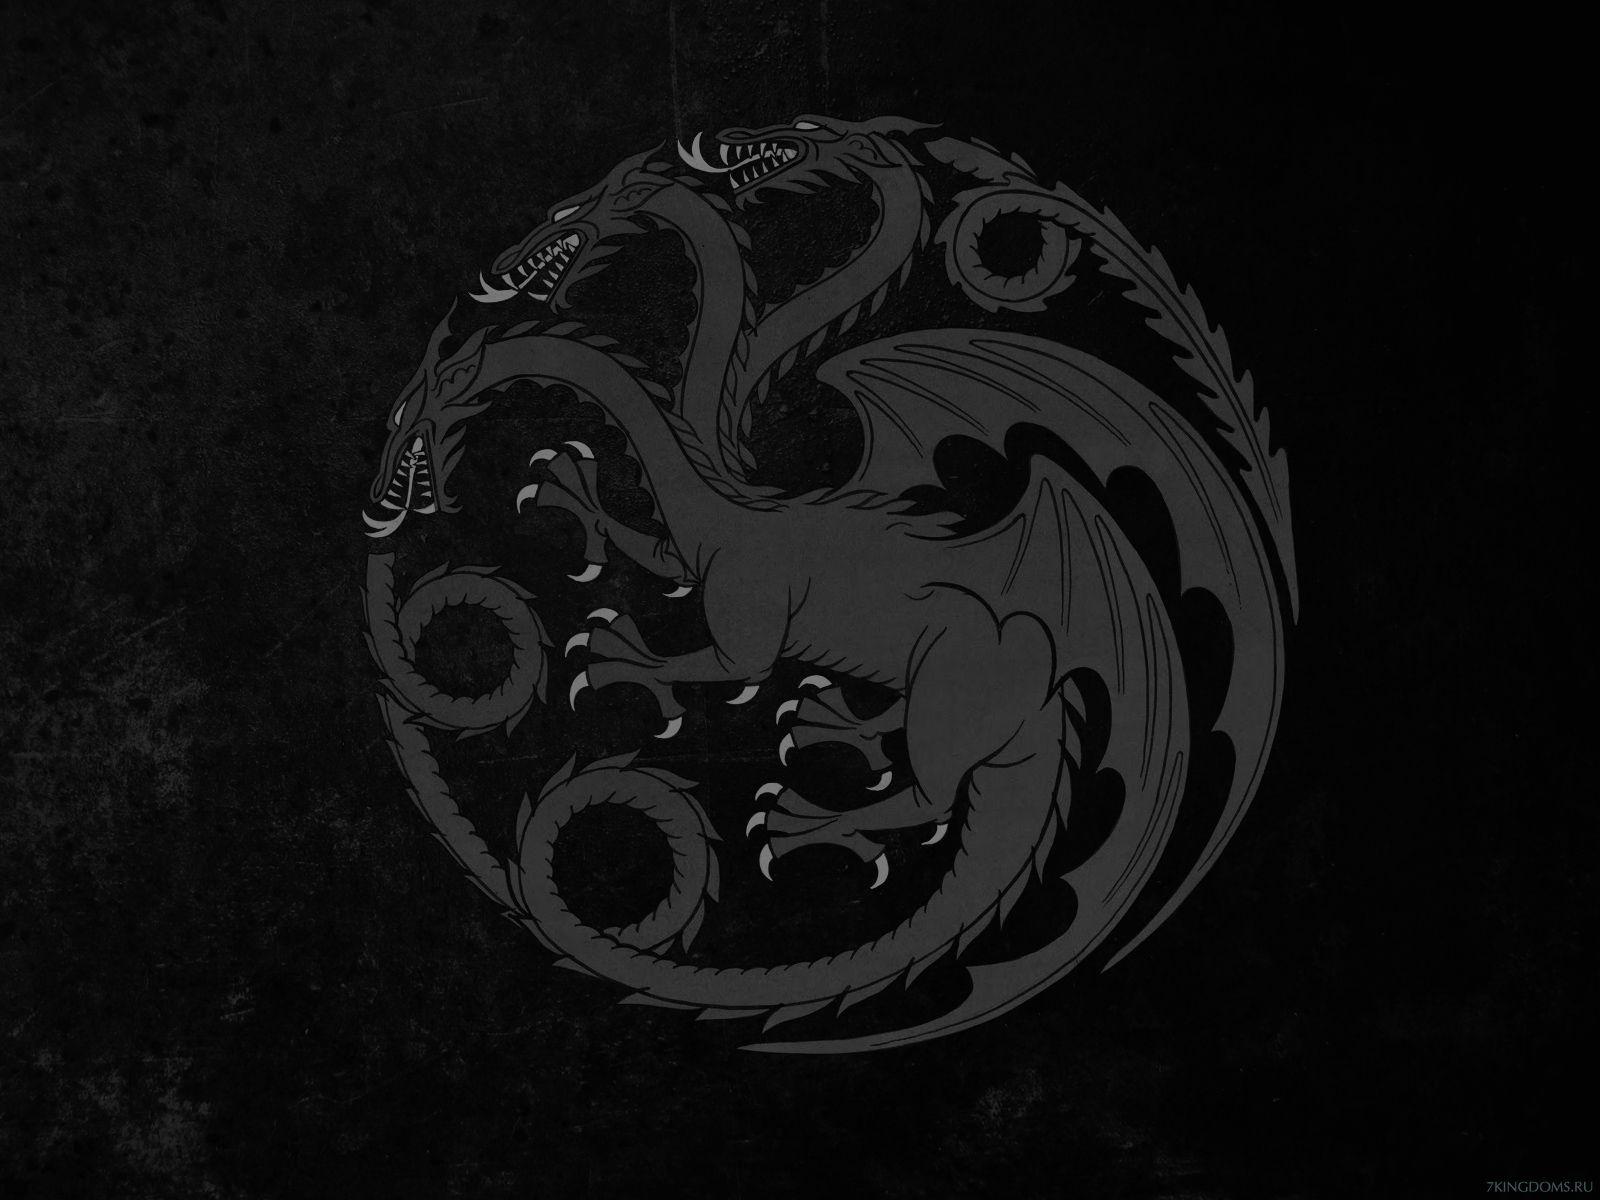 35+ Game Of Thrones Iphone Wallpaper Targaryen PNG